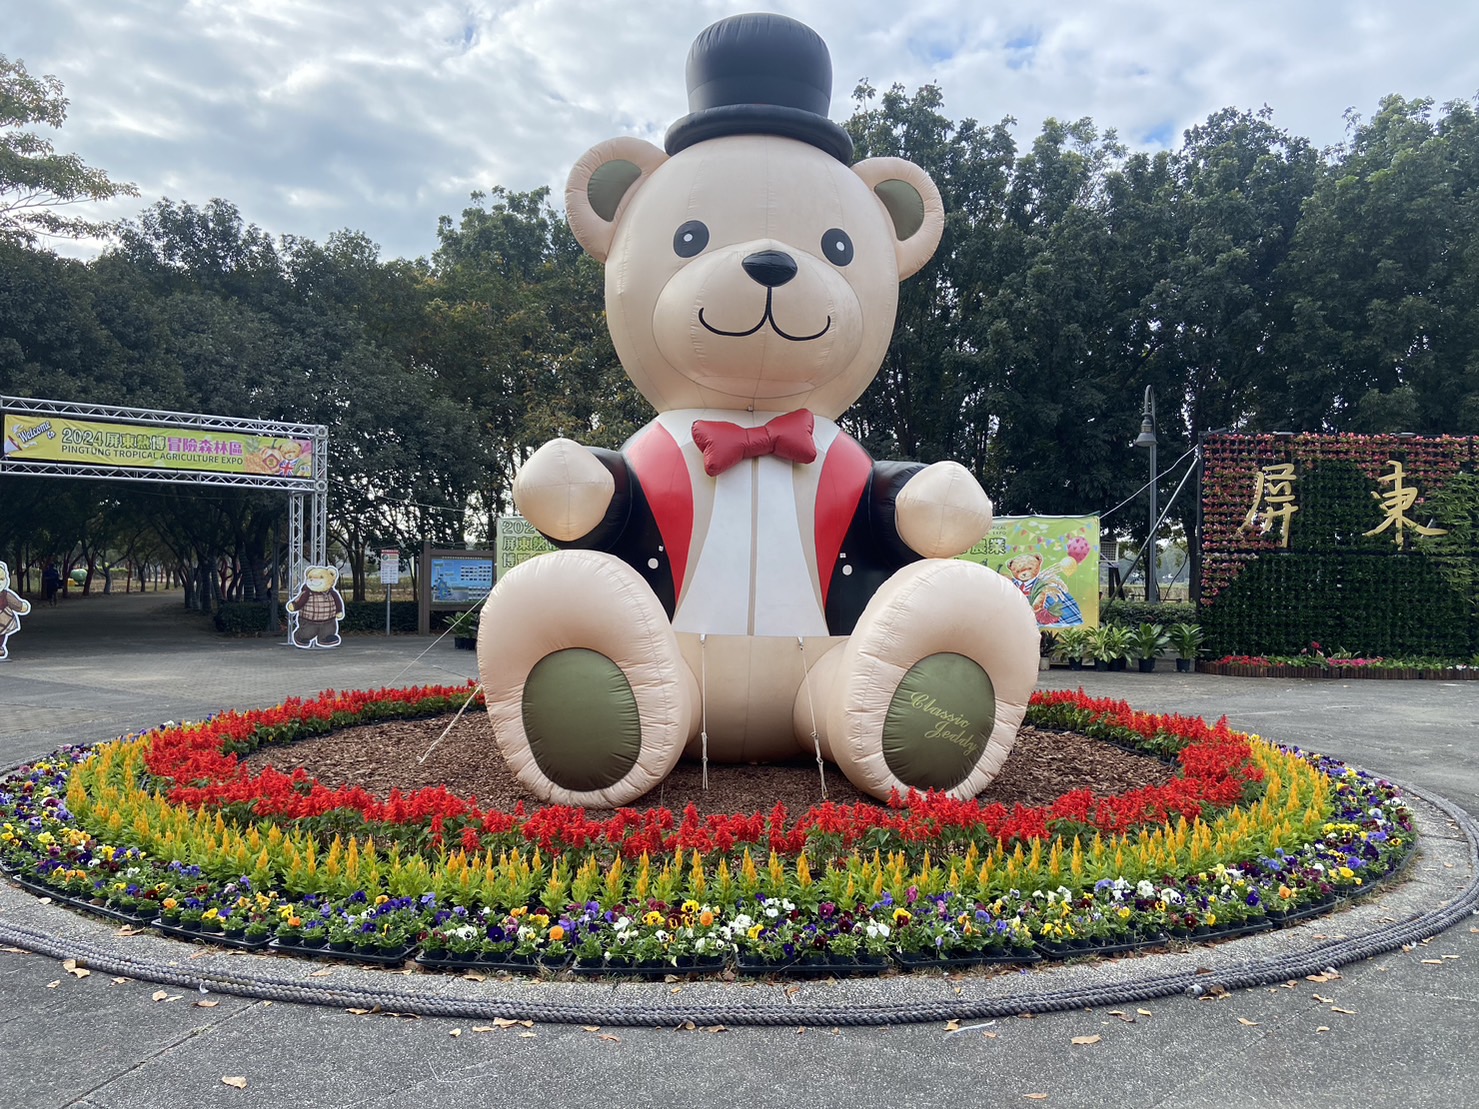 客服中心前廣場就是充滿活動意象大型泰迪熊充氣布偶與亮麗植栽牆。（圖／屏東縣政府提供）